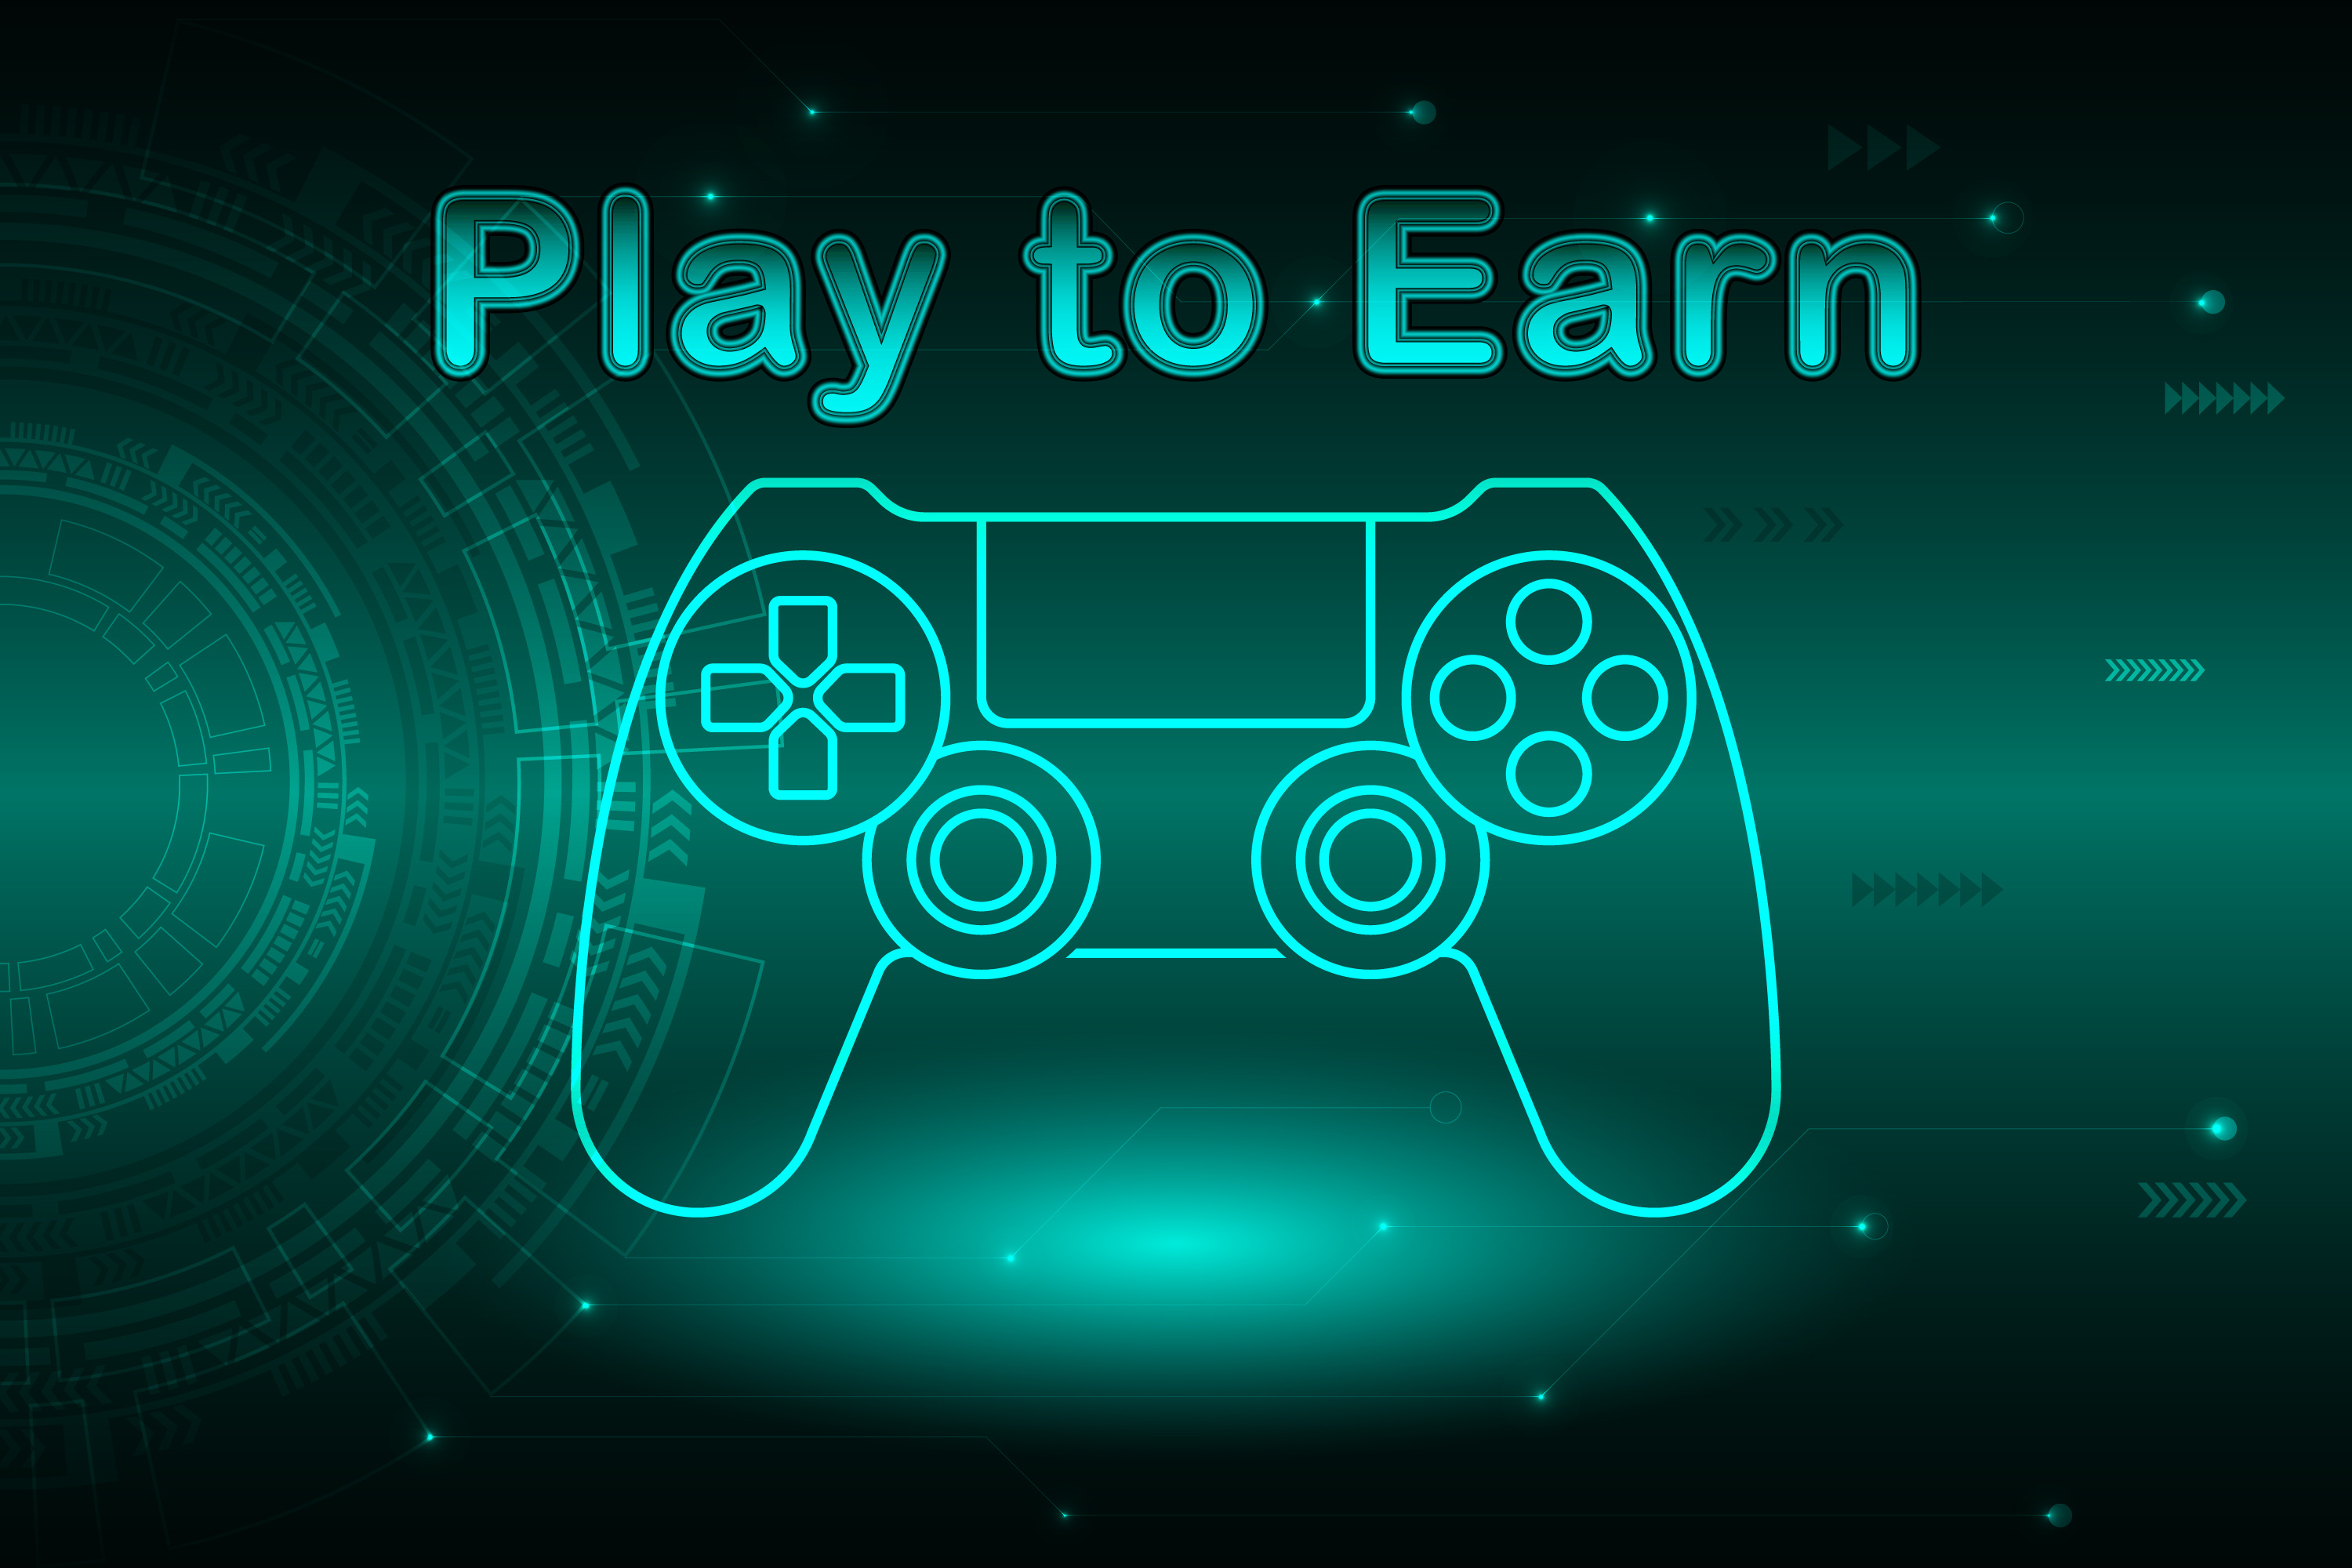 Jogos play-to-earn: você sabe o que são?